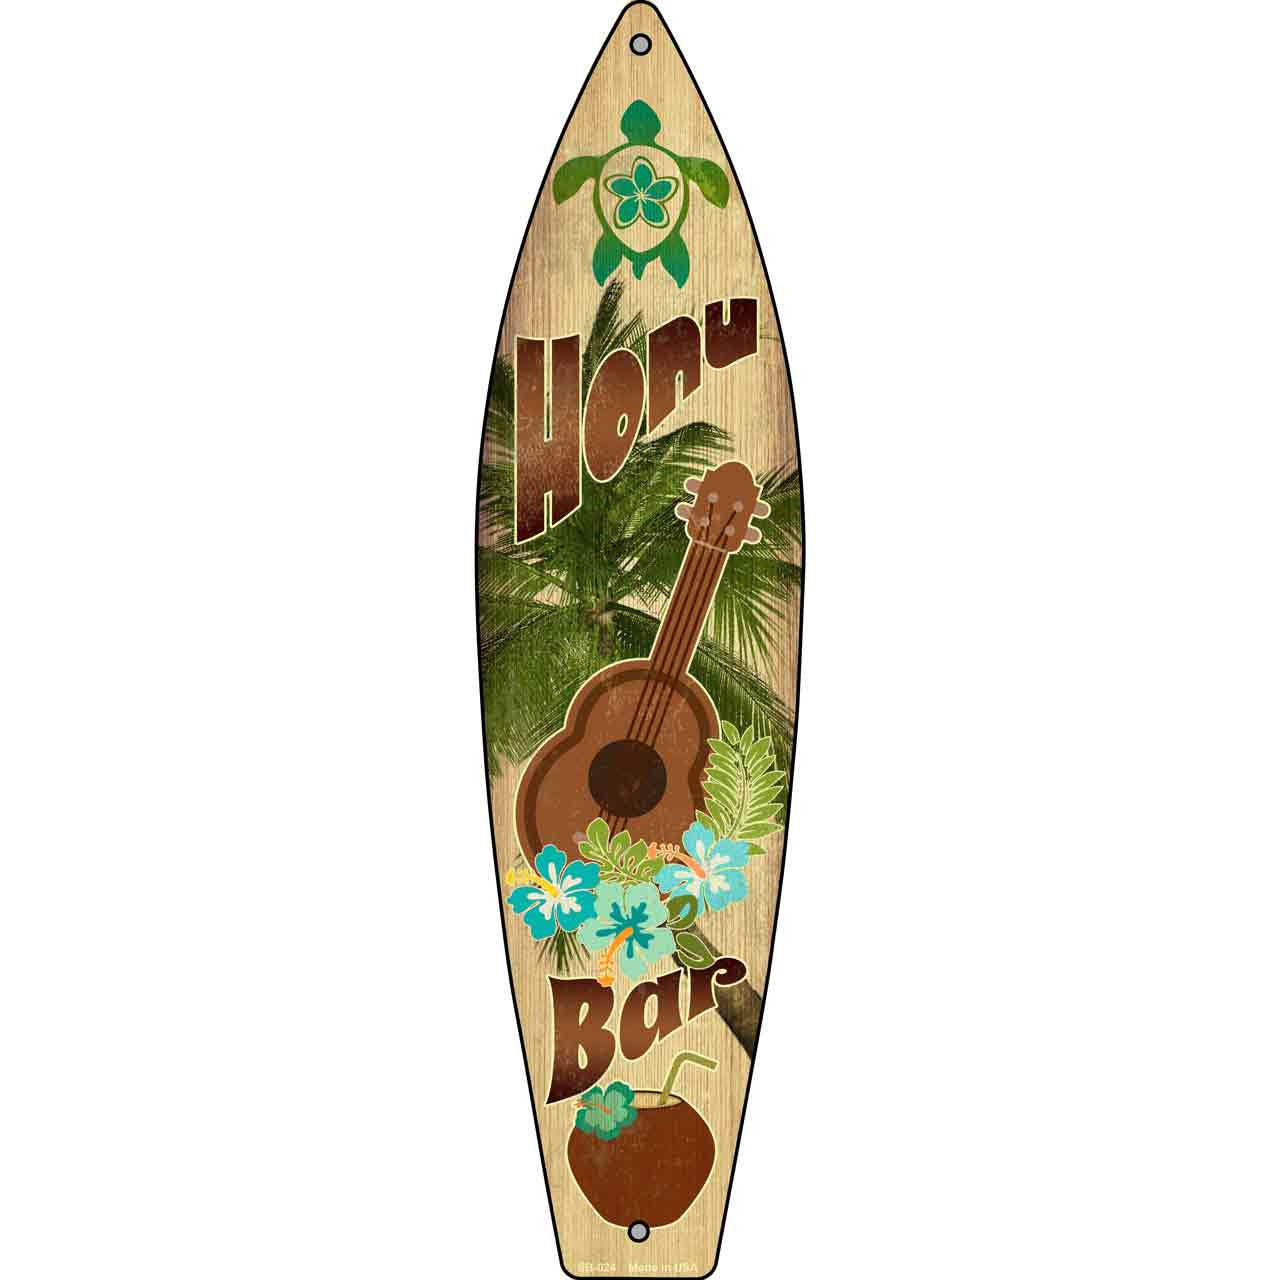 Honu Bar 17" x 4.5" Metal Novelty Surfboard Sign SB-024